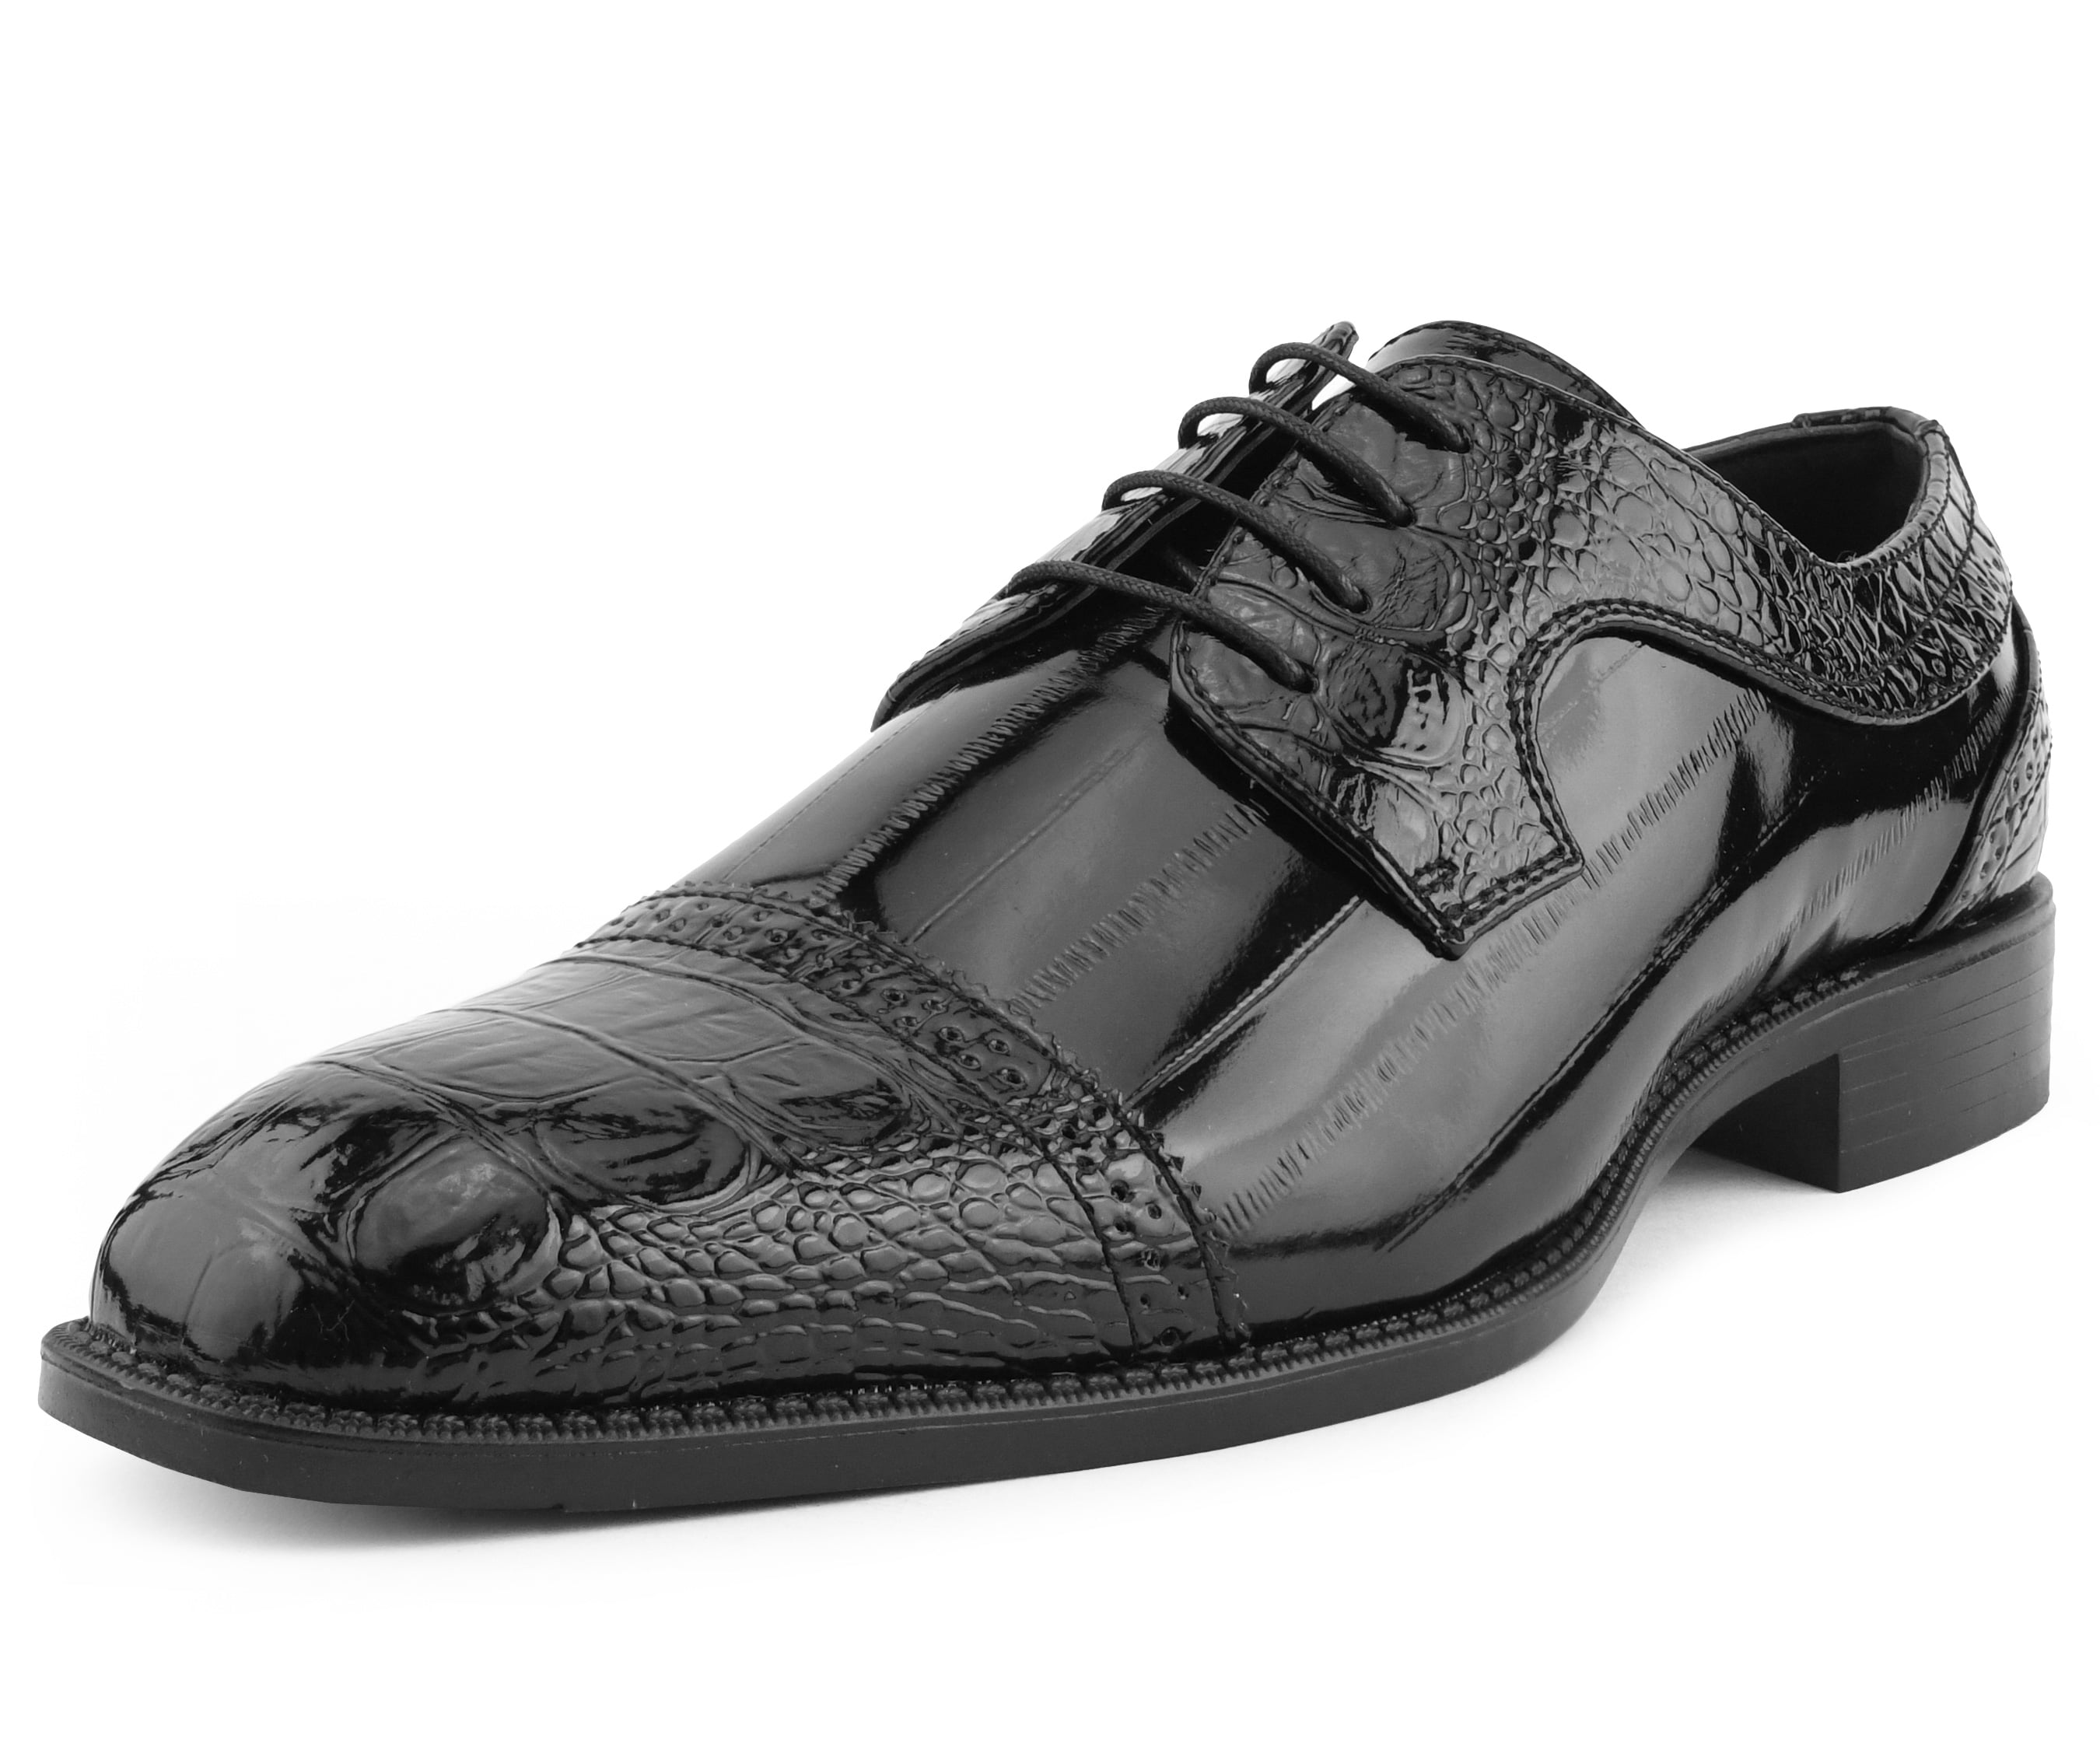 mens size 8 black dress shoes